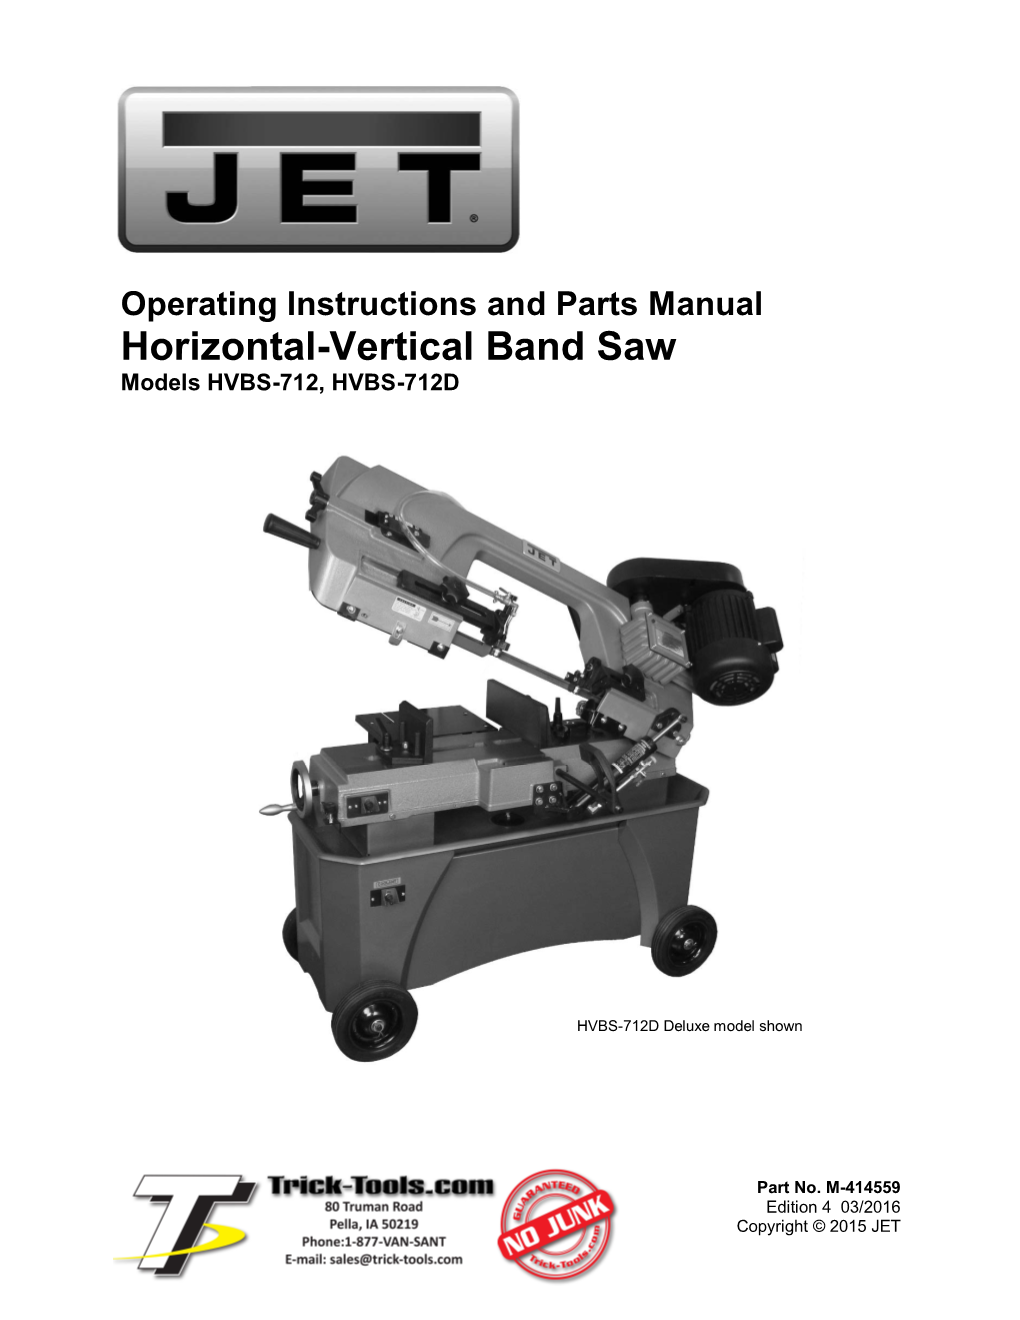 Horizontal-Vertical Band Saw Models HVBS-712, HVBS-712D